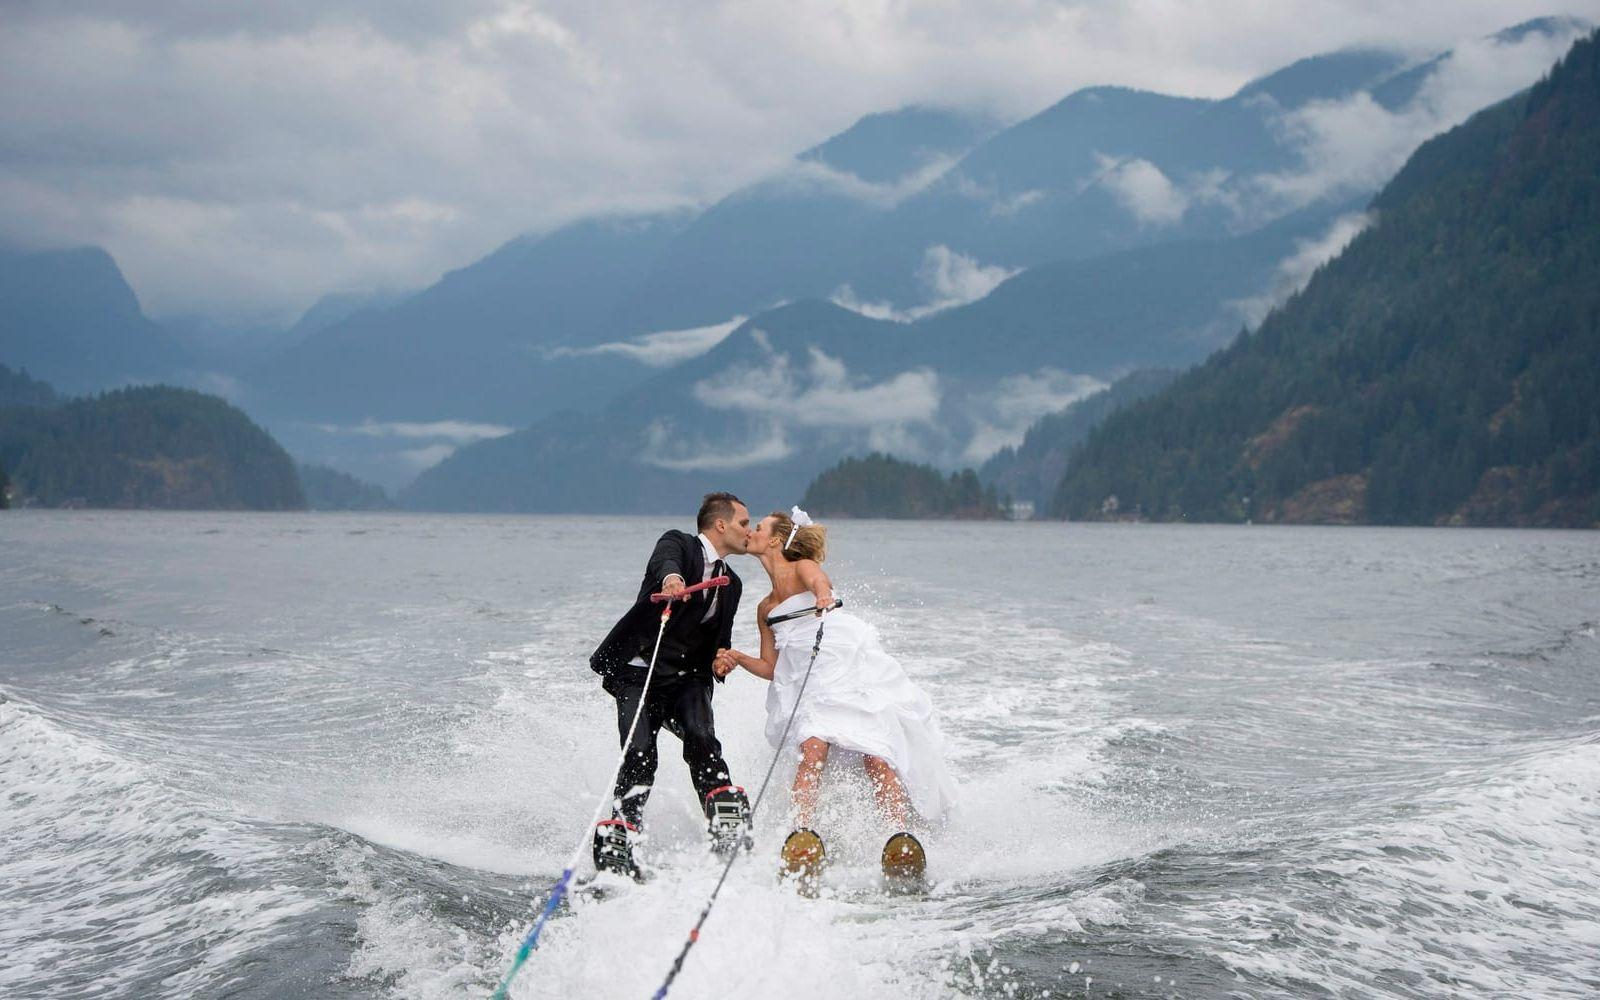 Även ovanför ytan fungerar det utmärkt att gifta sig. Cam Auge och Caylee Wasilenko från Vancouver åkte vattenskidor i samband med bröllopet.
Själva ceremonin skedde på land i Vancouver Waterski Clus område, men paret avslutade med att ta den traditionella kyssen ute på vattnet. Bild: TT